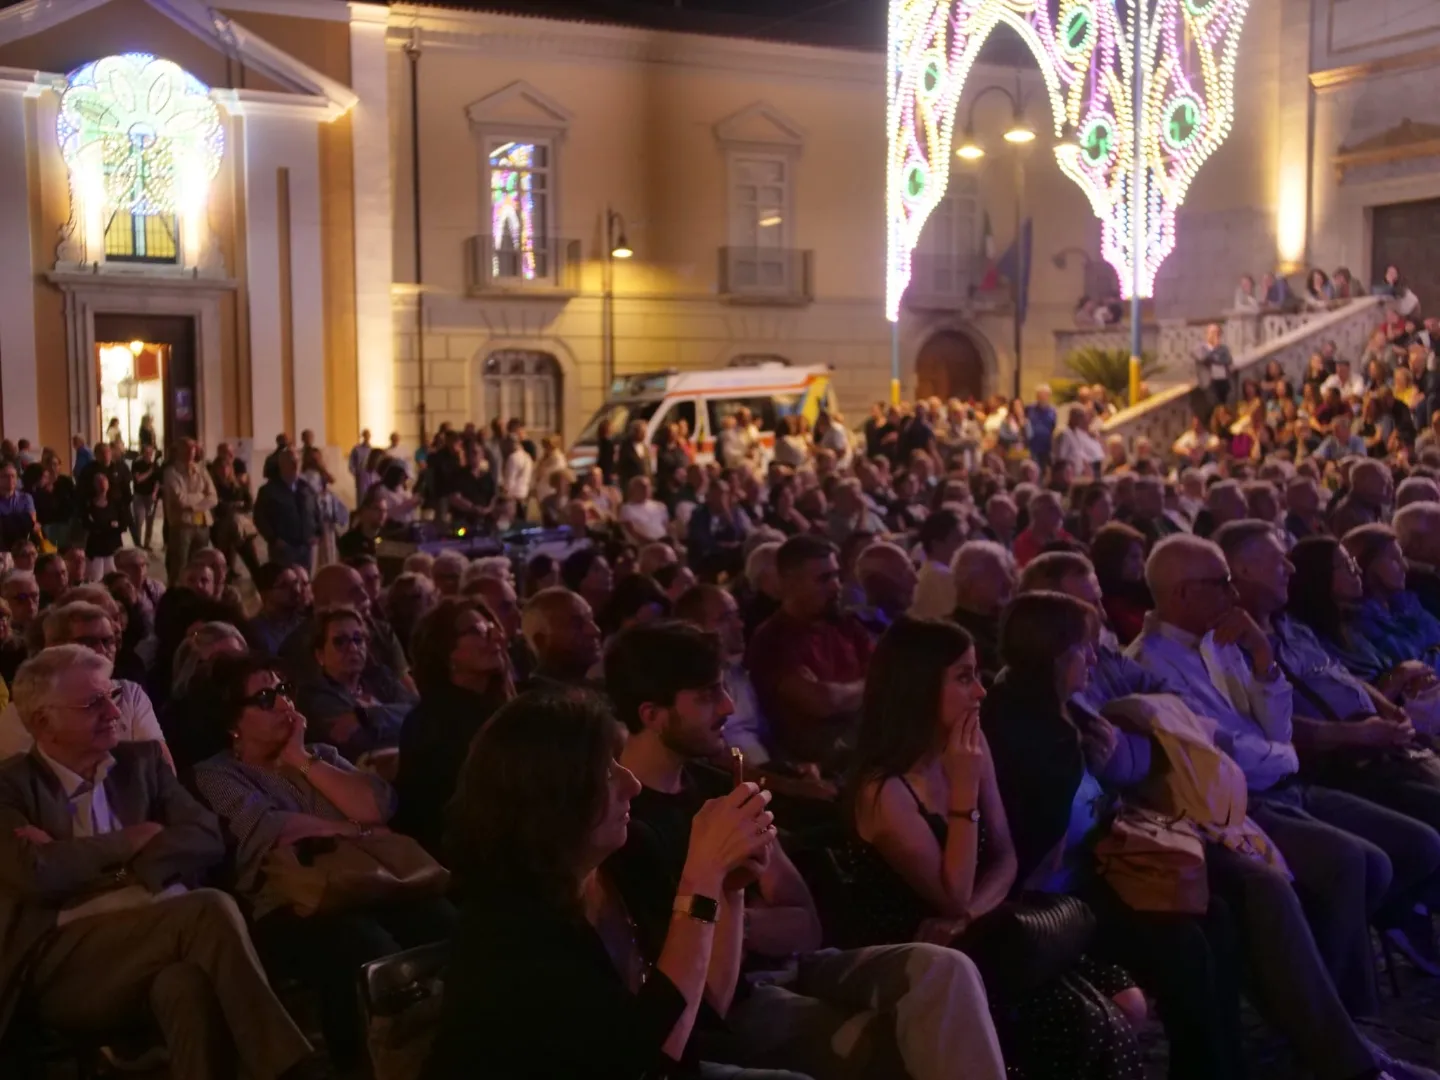 Avellino Summer Festival, Silvestri e Rea incantano al “Jazz al Duomo”. Stasera chiusura con Davide Cerreta